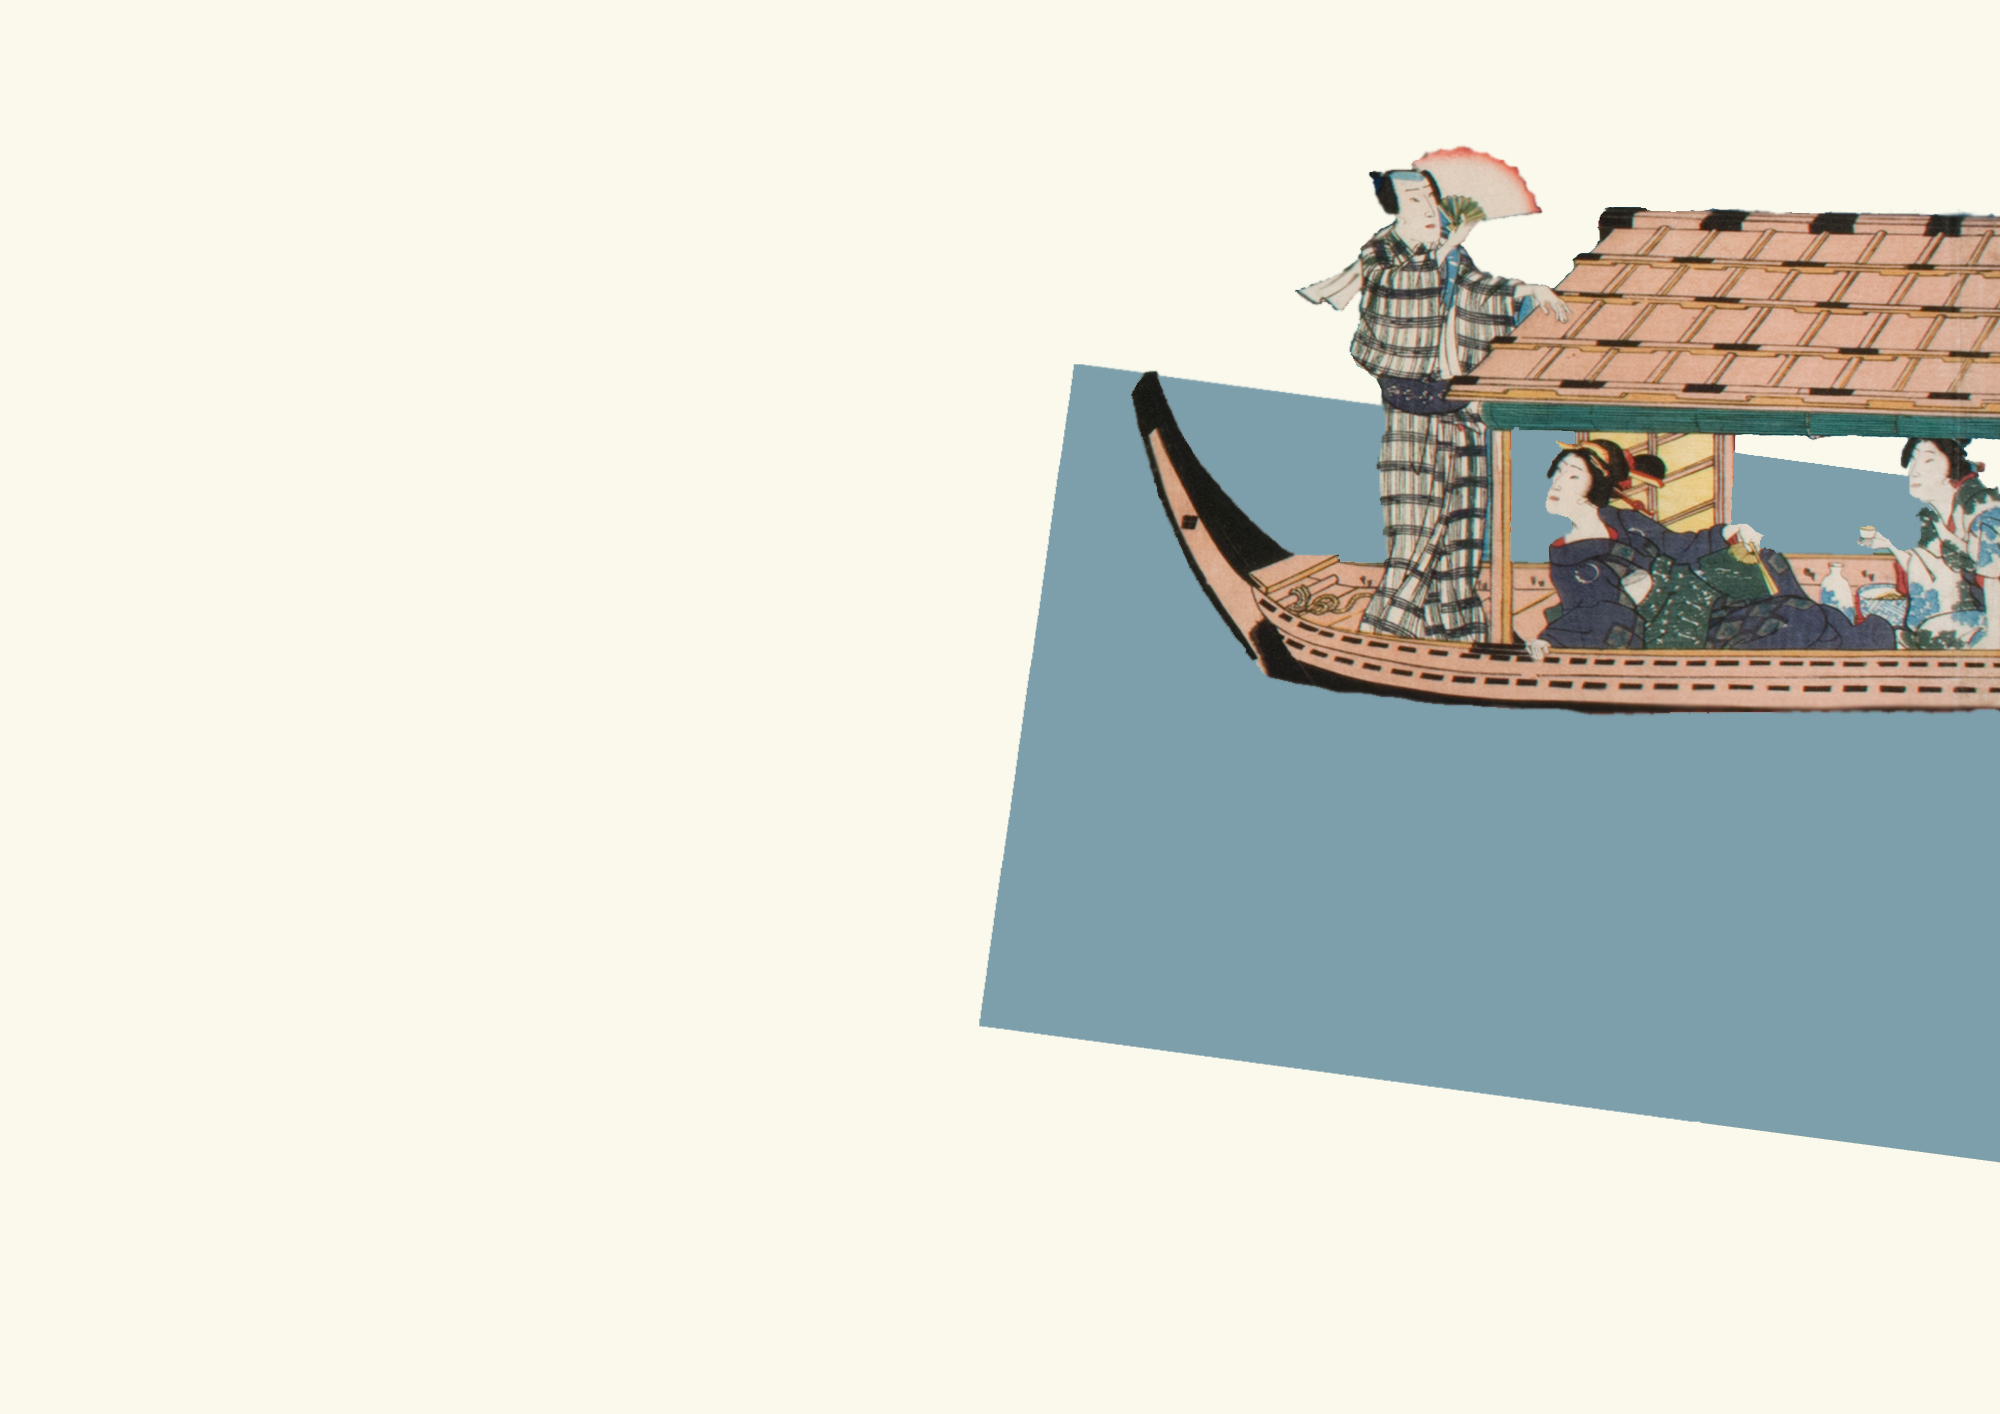 Kolaż złożony z prostego niebieskiego czworokąta i wycinka tradycyjnego japońskiego drzeworytu. Drzeworyt przedstawia drewnianą łódź z trzema osobami, czyli mężczyzną i dwiema kobietami na pokładzie, pogrążonych w rozmowie przy kieliszku sake.